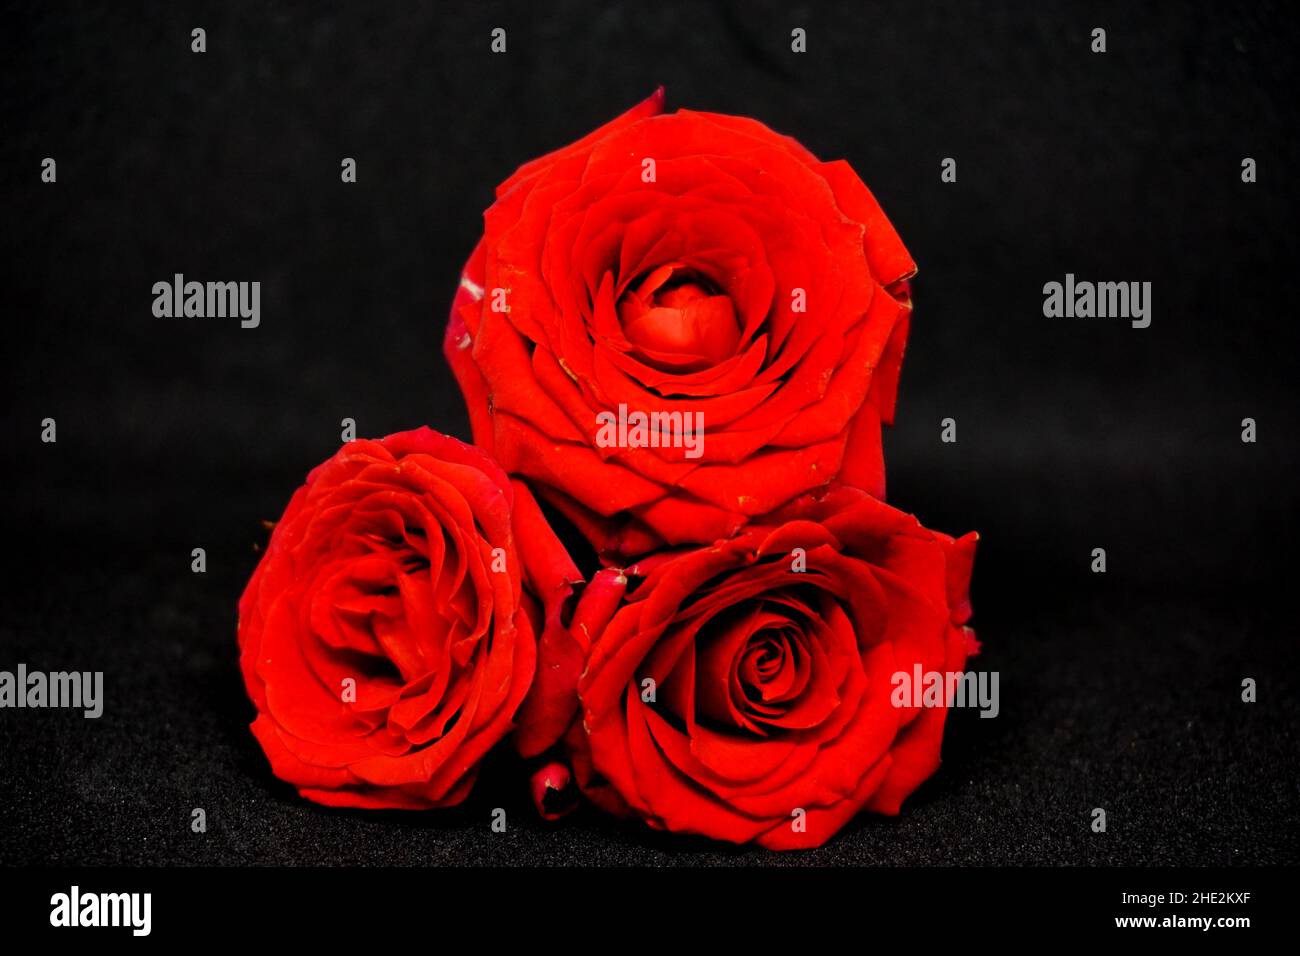 Rose rouge sur fond noir, vue rapprochée Banque D'Images